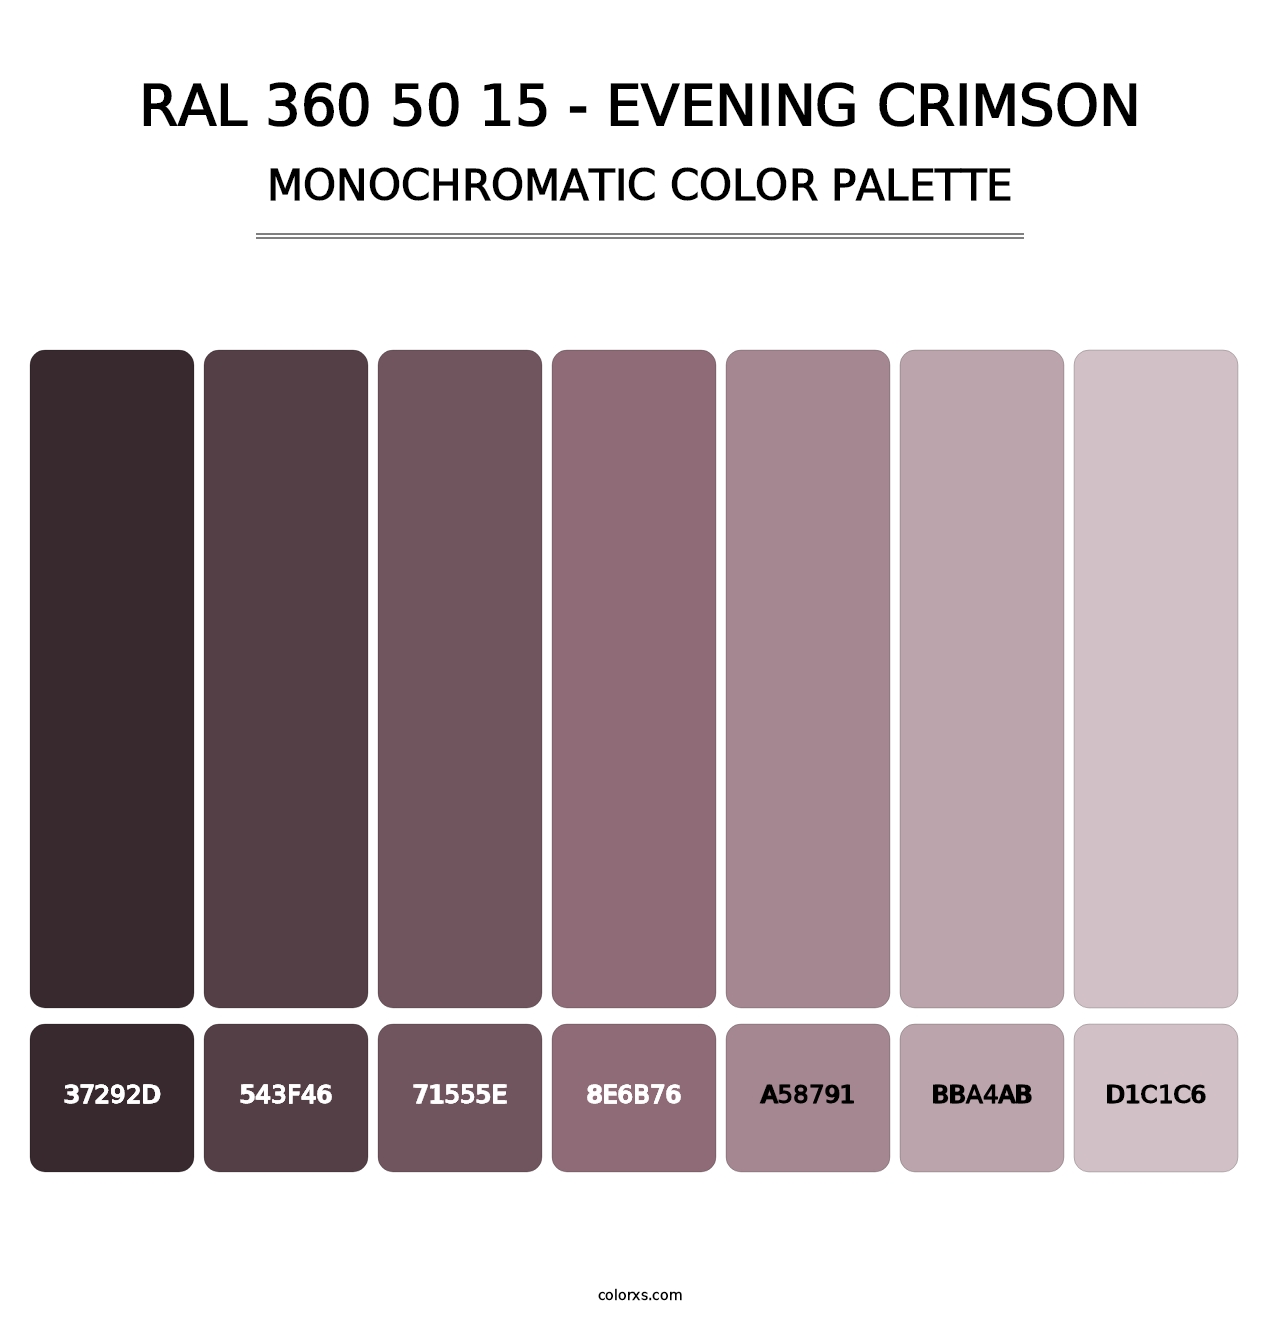 RAL 360 50 15 - Evening Crimson - Monochromatic Color Palette